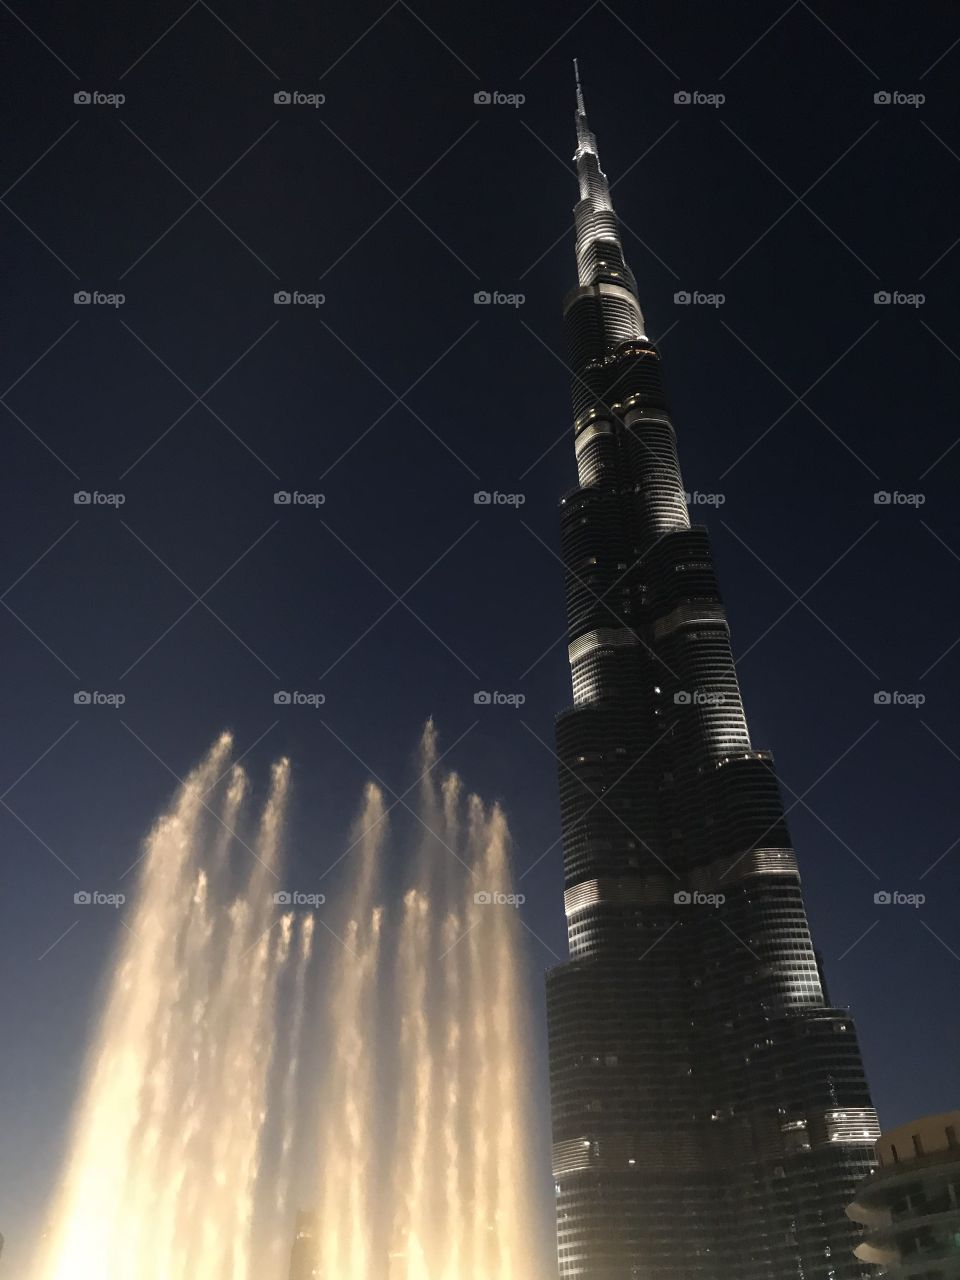 Burj Khalifa and fountains - Dubai